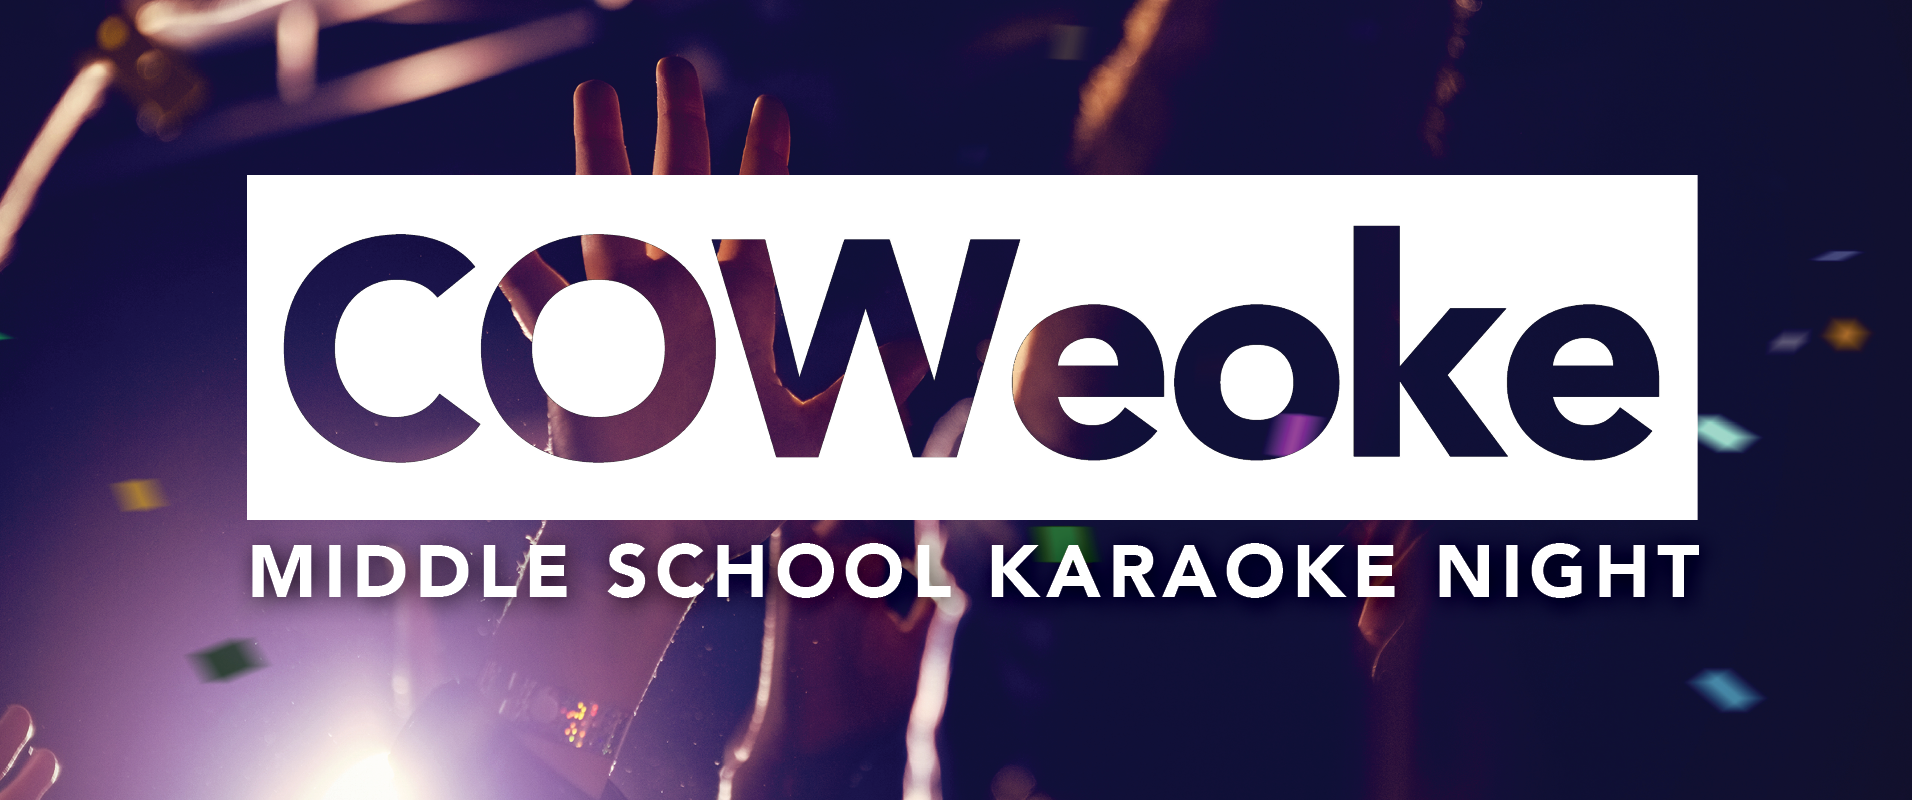 COWeoke
October 11 | 7:00–9:00 p.m. | Oak Brook
